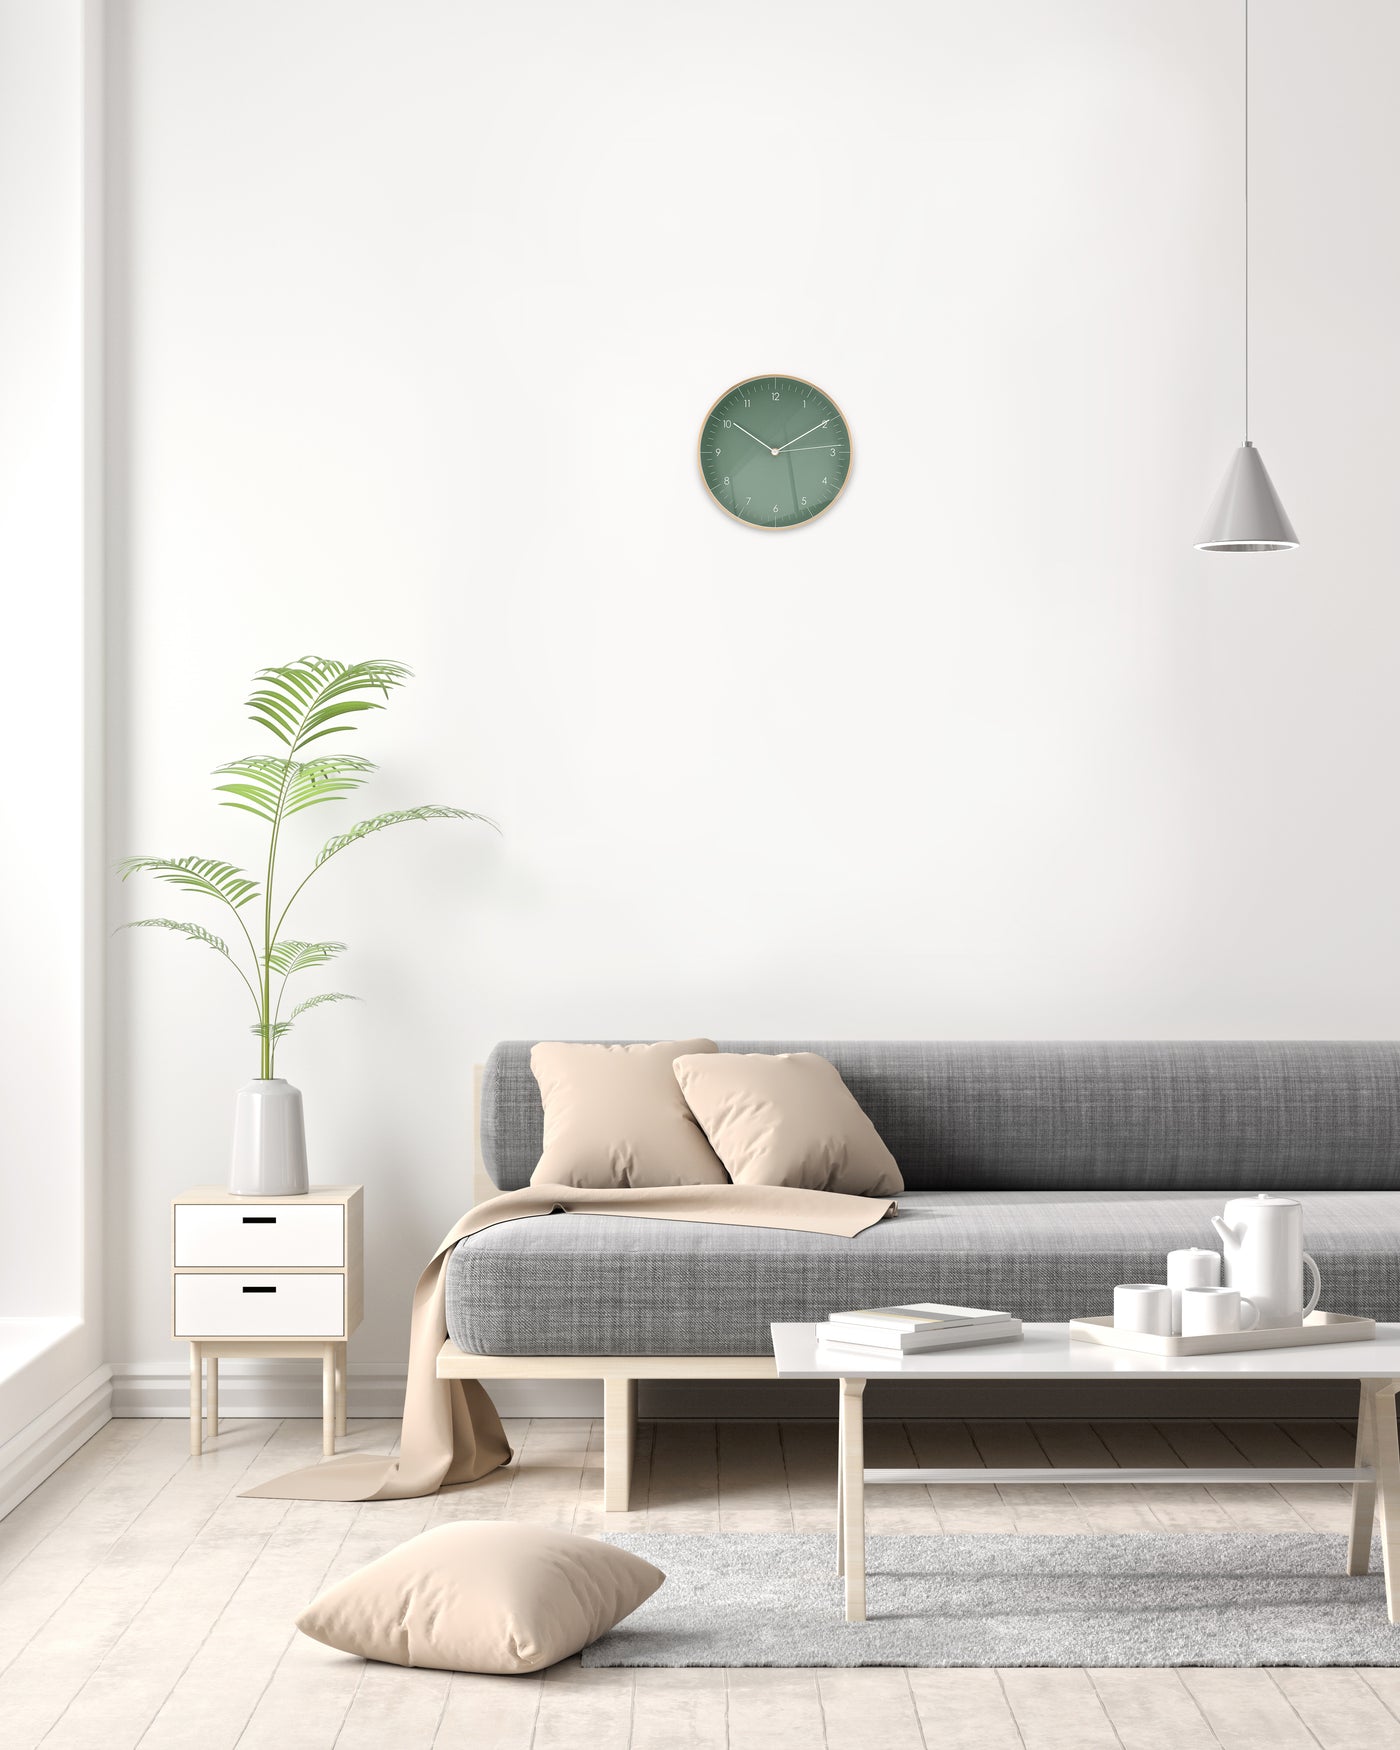 Im Wohnzimmer hängt Wanduhr mit grünem Zifferblatt und goldenen Details über Beistelltisch mit Vase und grauer Couch